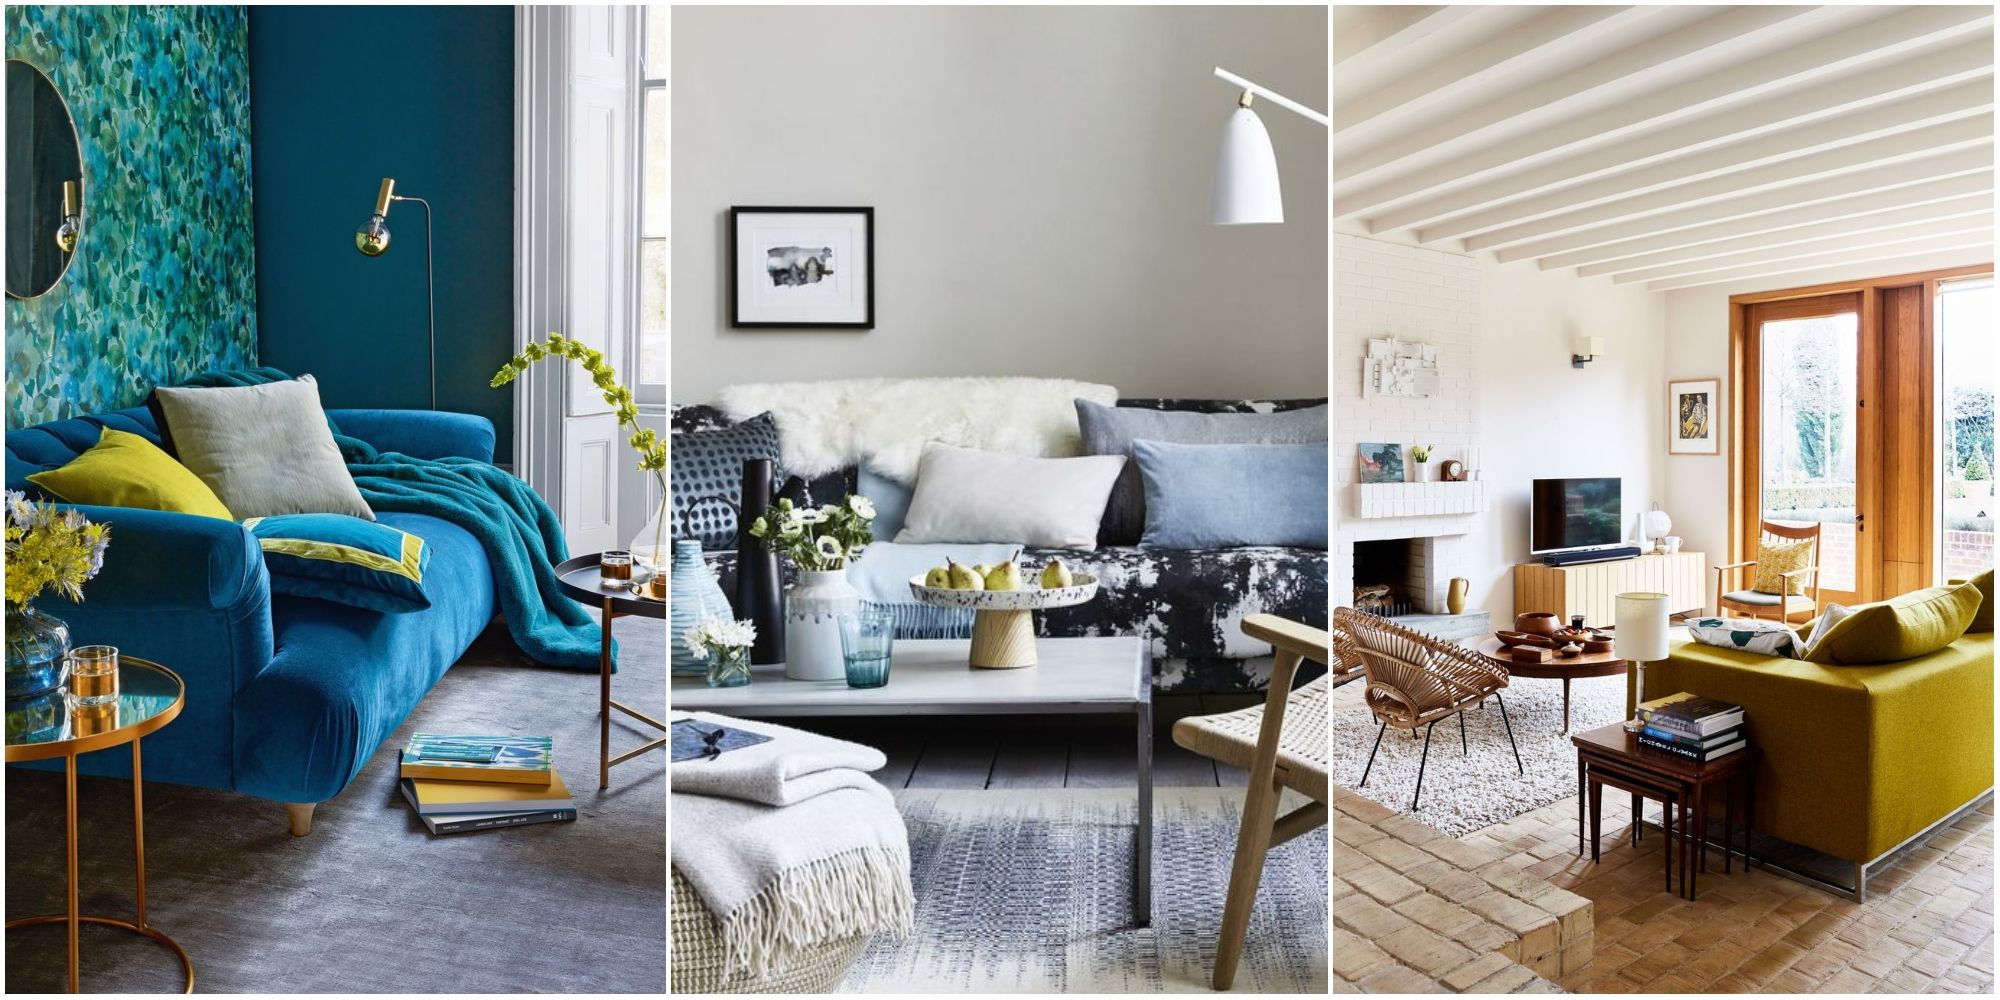 50 inspirational living room ideas - living room design